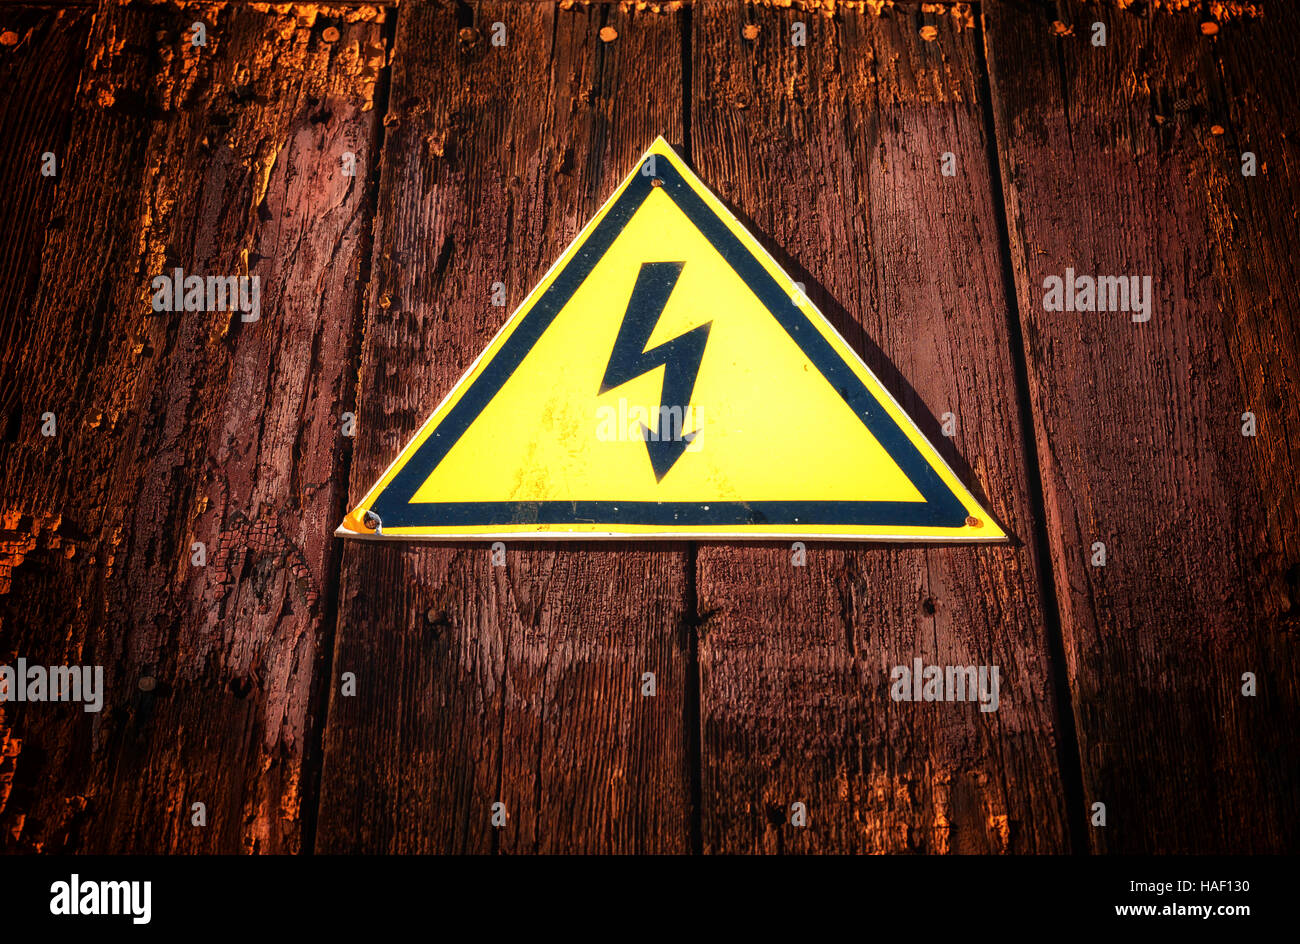 En forme d'avertissement jaune de l'électricité avec une bouilloire noire sur un bois sombre de style grunge background. Banque D'Images